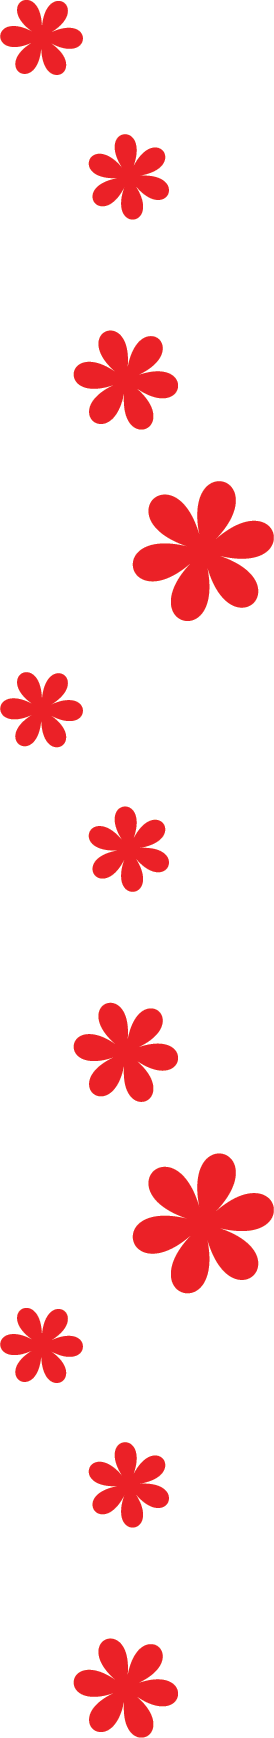 花のイラスト フリー素材 フレーム枠no 015 赤 大小 ボーダー